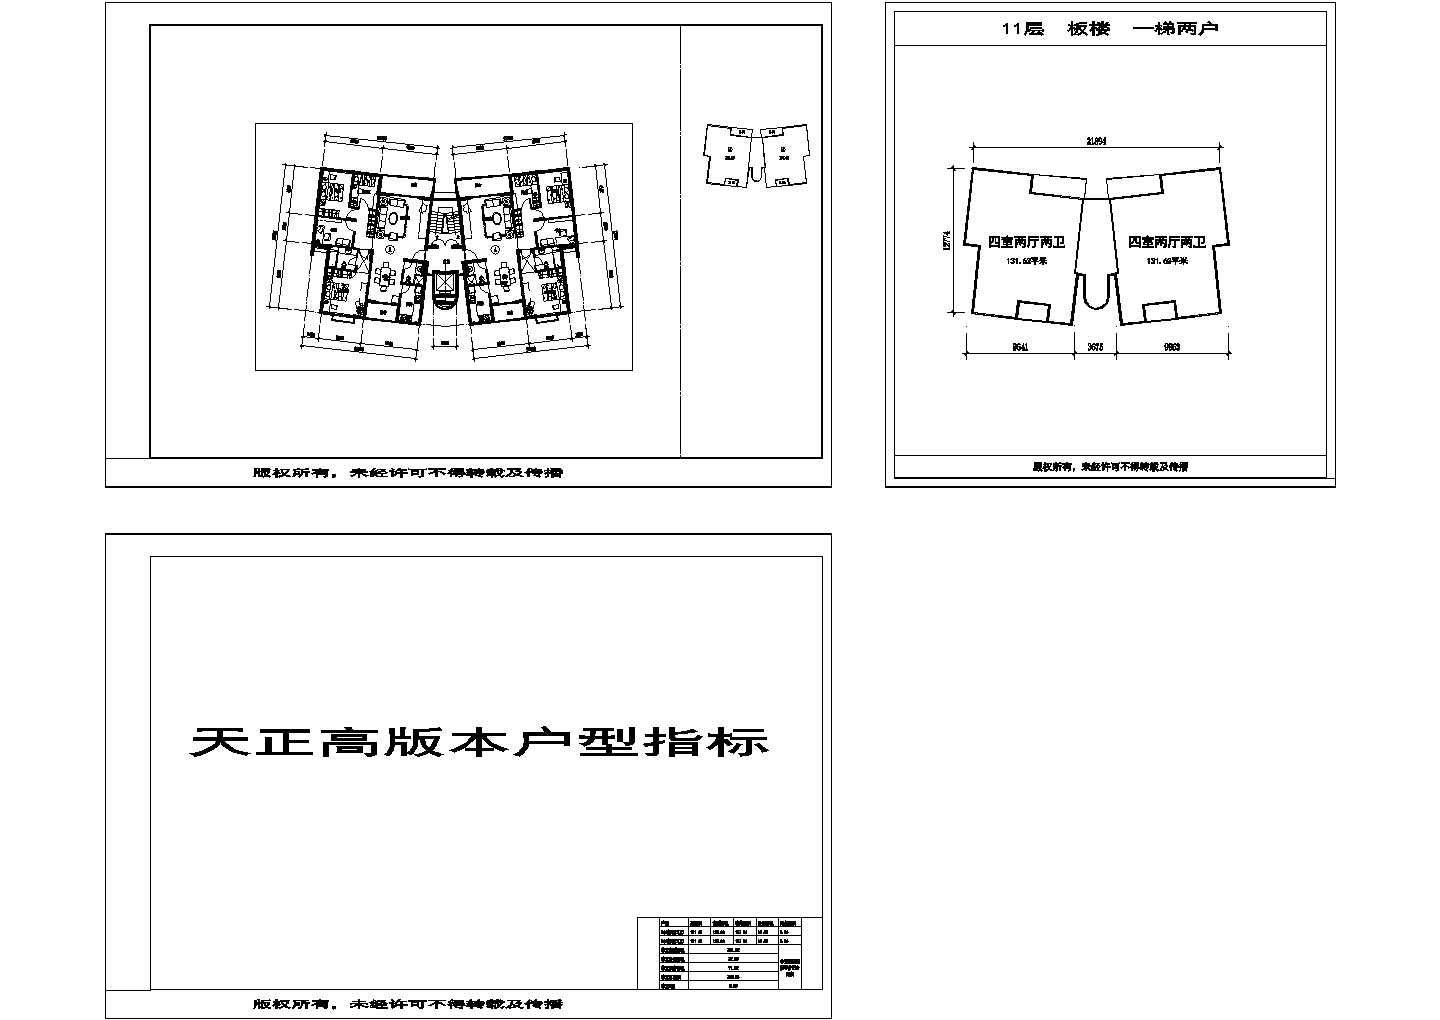 深圳 万科 深圳温馨家园 1梯2户 11层 户型 1 cad施工图设计